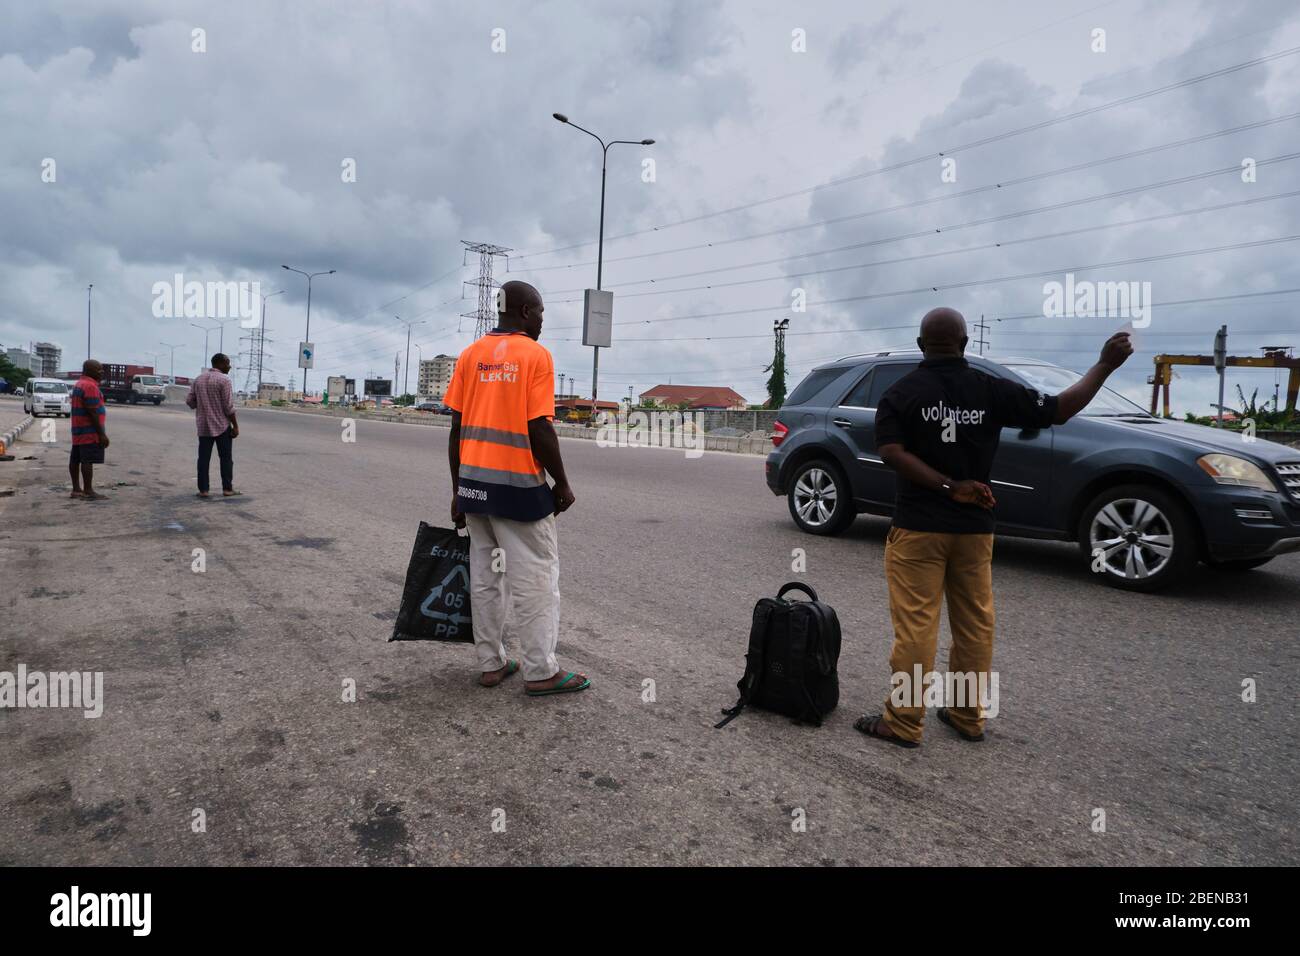 Les gens essaient de faire des drapeaux sur les voitures pour arriver à leur destination pendant le verrouillage de Covid-19 à Lagos, au Nigeria. Banque D'Images